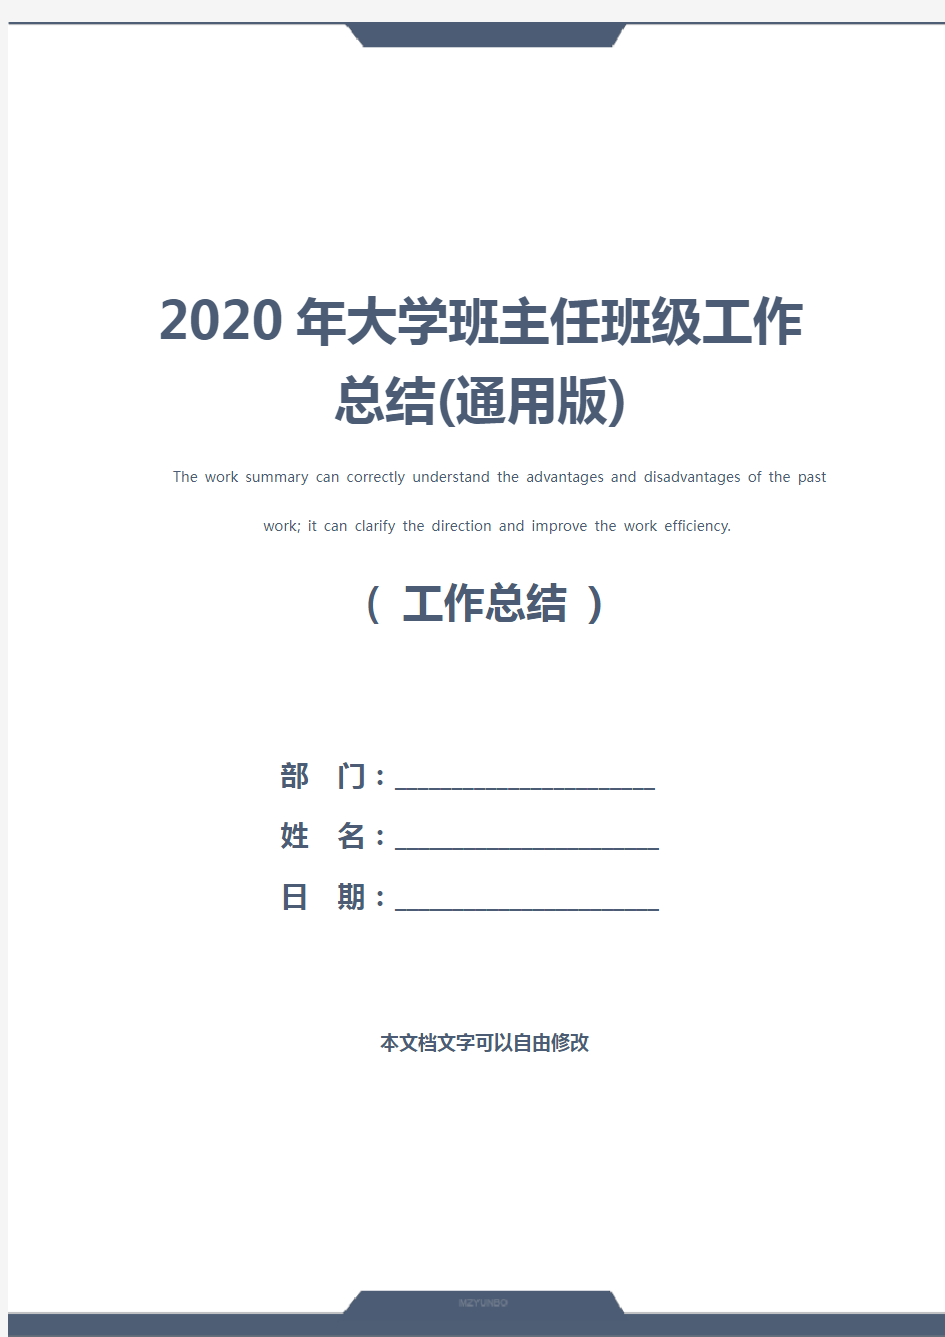 2020年大学班主任班级工作总结(通用版)